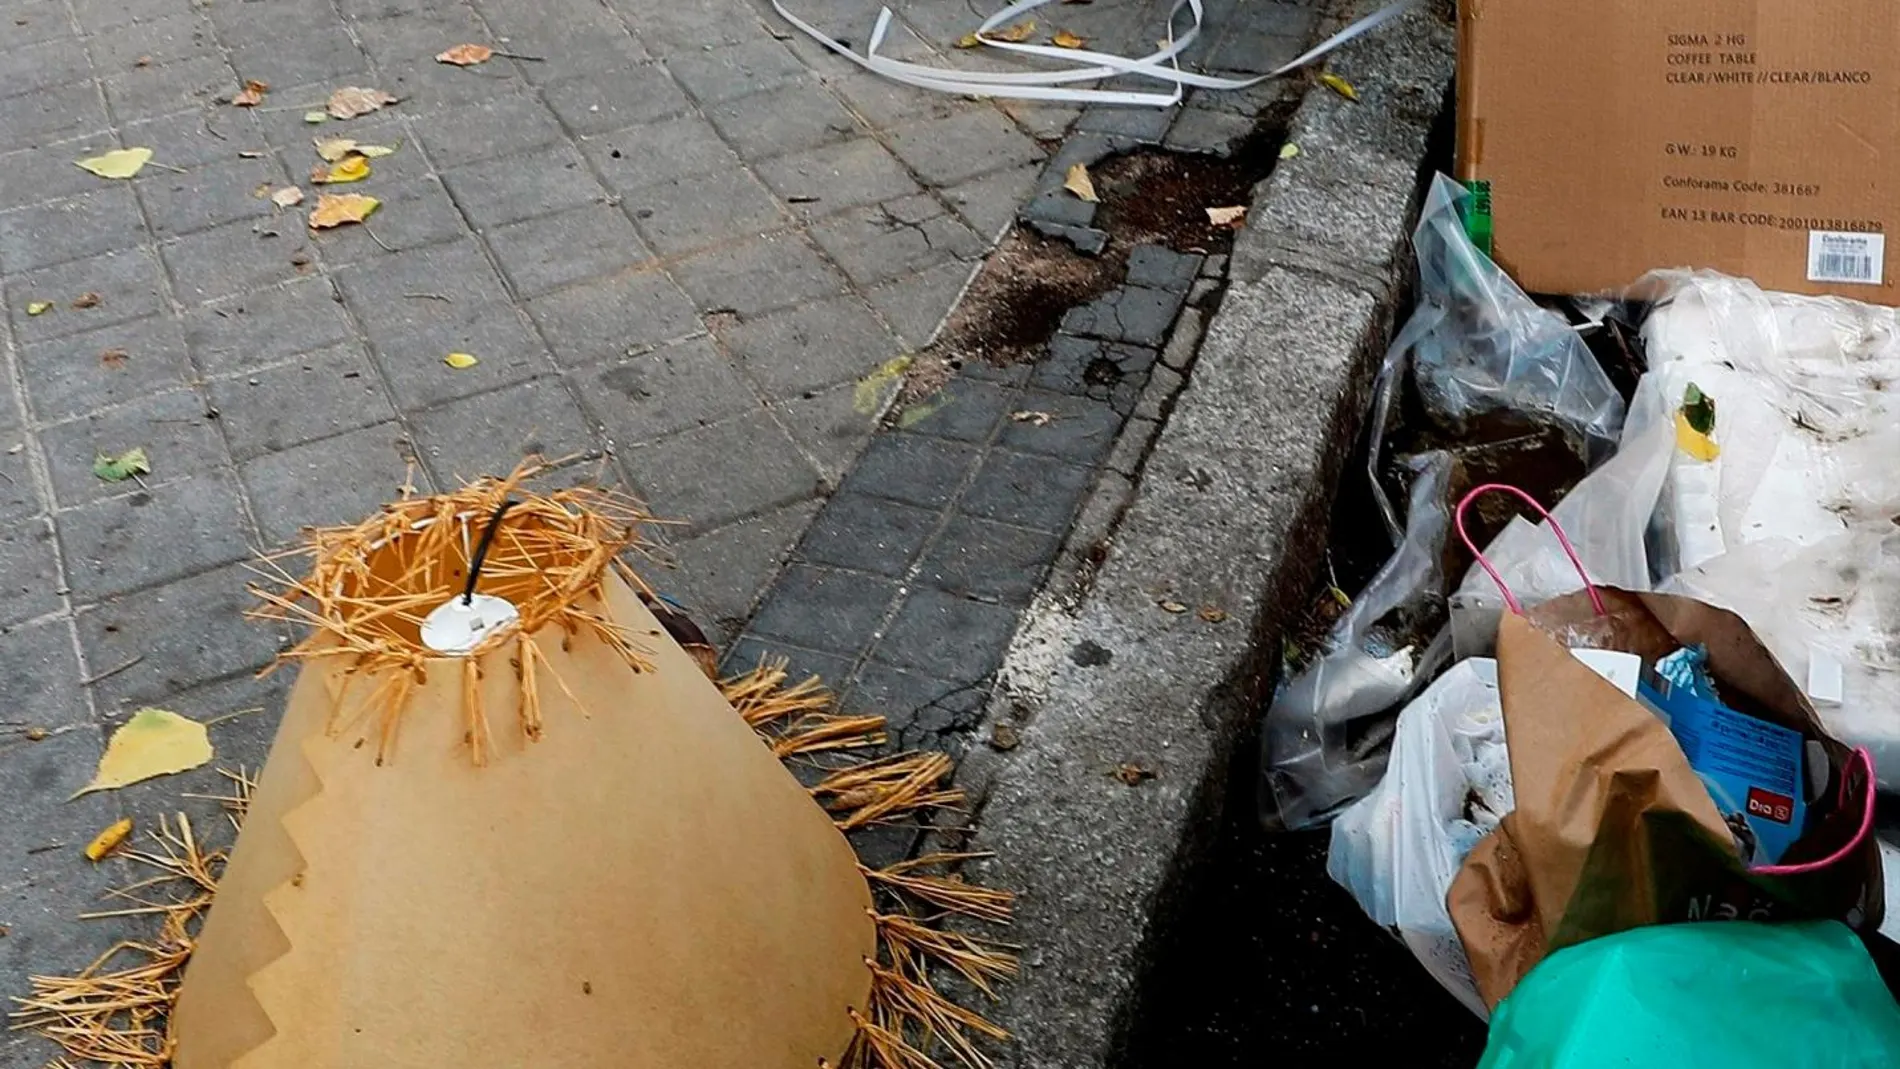 Los residuos que se acumulan sin recoger son un problema para los vecinos / Foto: Efe